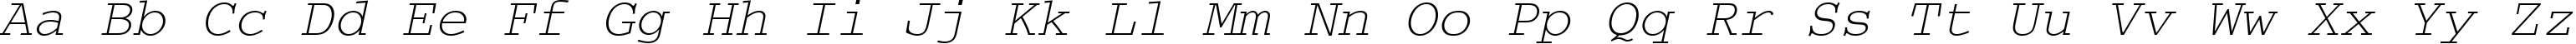 Пример написания английского алфавита шрифтом CourierMCY Oblique